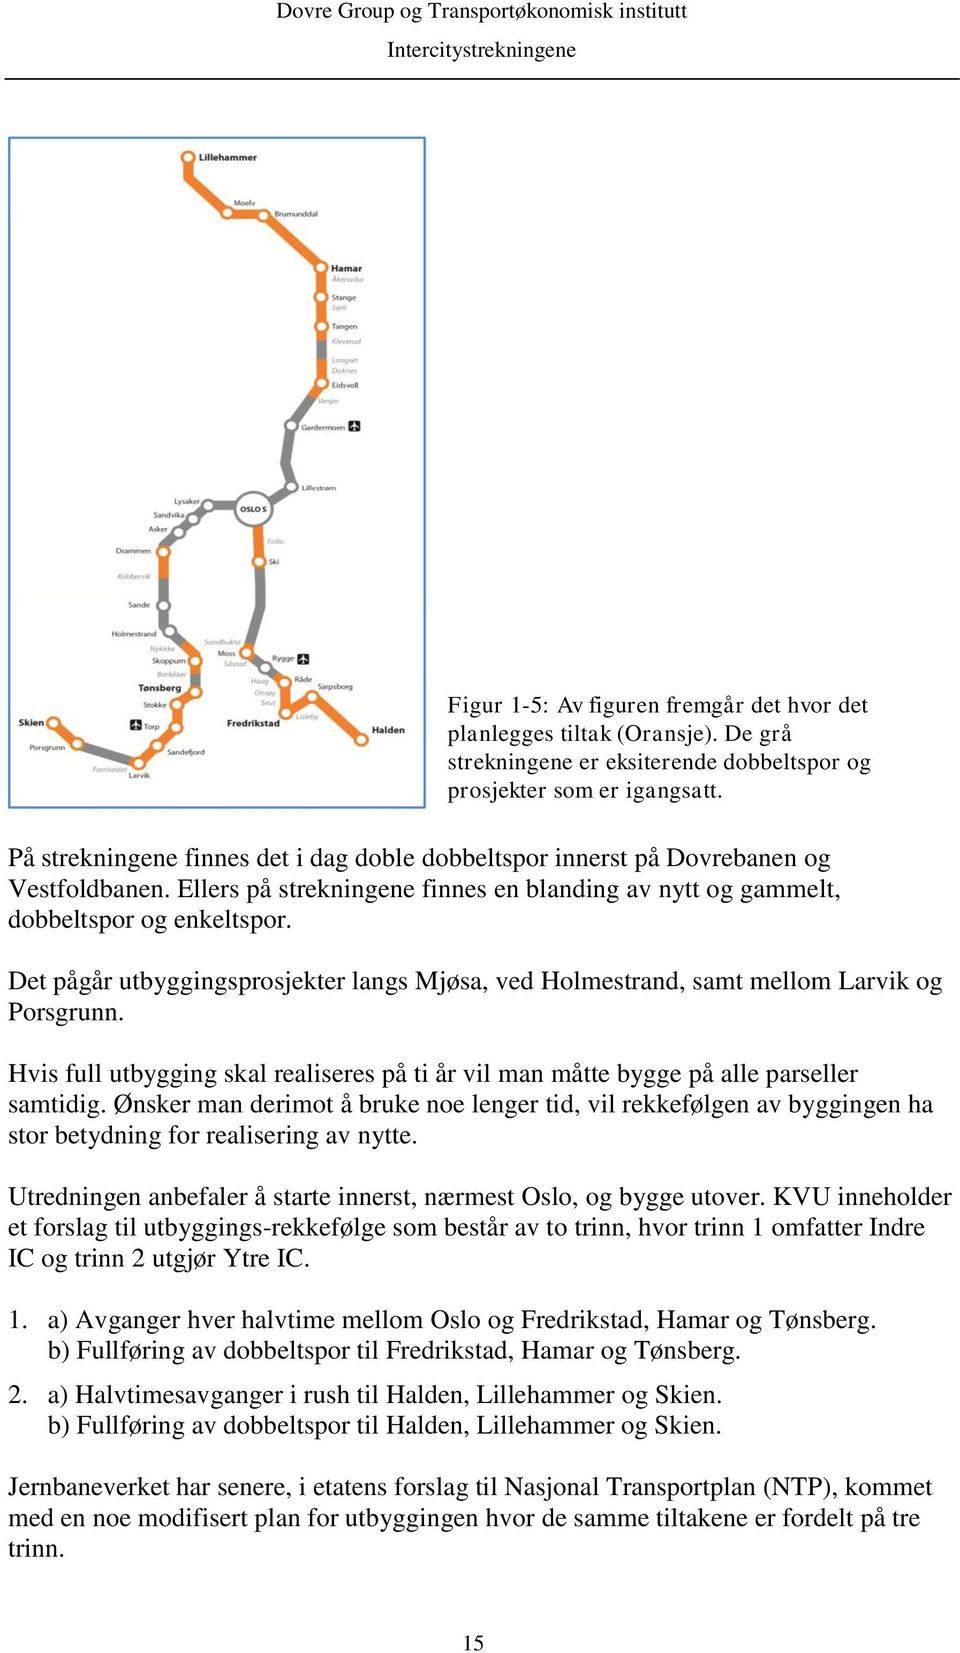 Det pågår utbyggingsprosjekter langs Mjøsa, ved Holmestrand, samt mellom Larvik og Porsgrunn. Hvis full utbygging skal realiseres på ti år vil man måtte bygge på alle parseller samtidig.